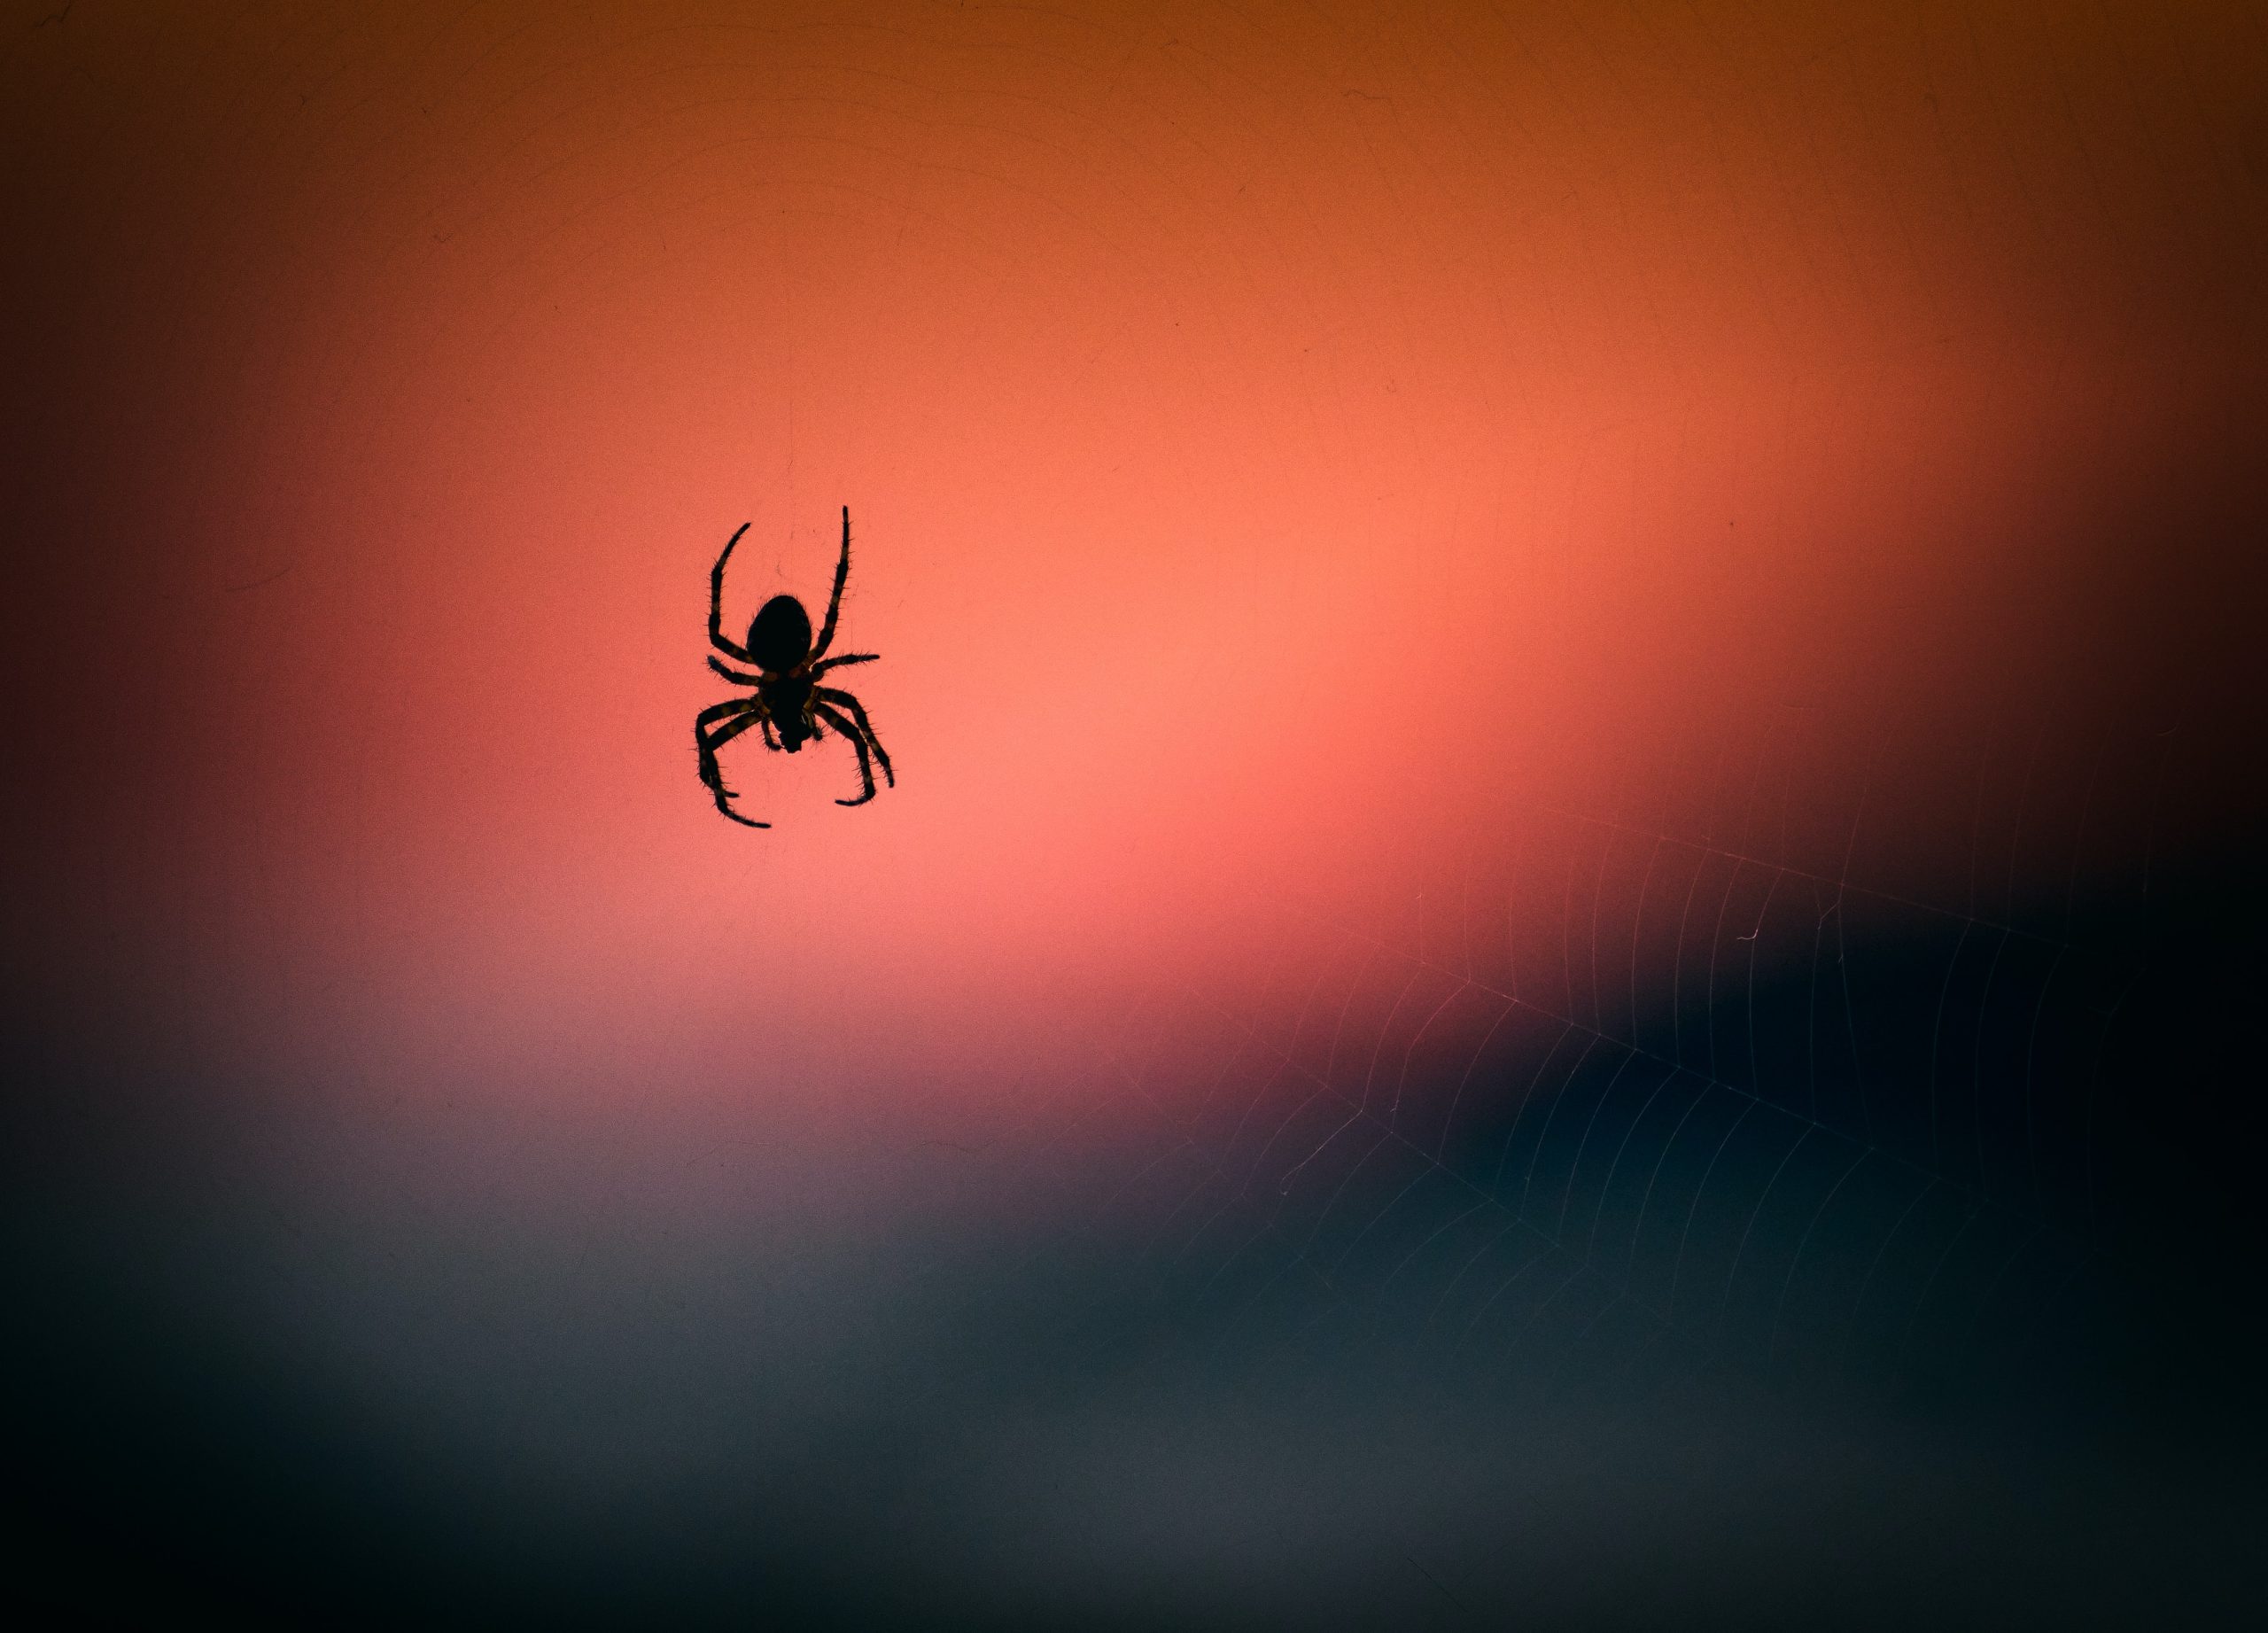  Rüyanızda örümcek mi gördünüz? Arkasındaki ruhani anlamı keşfedin